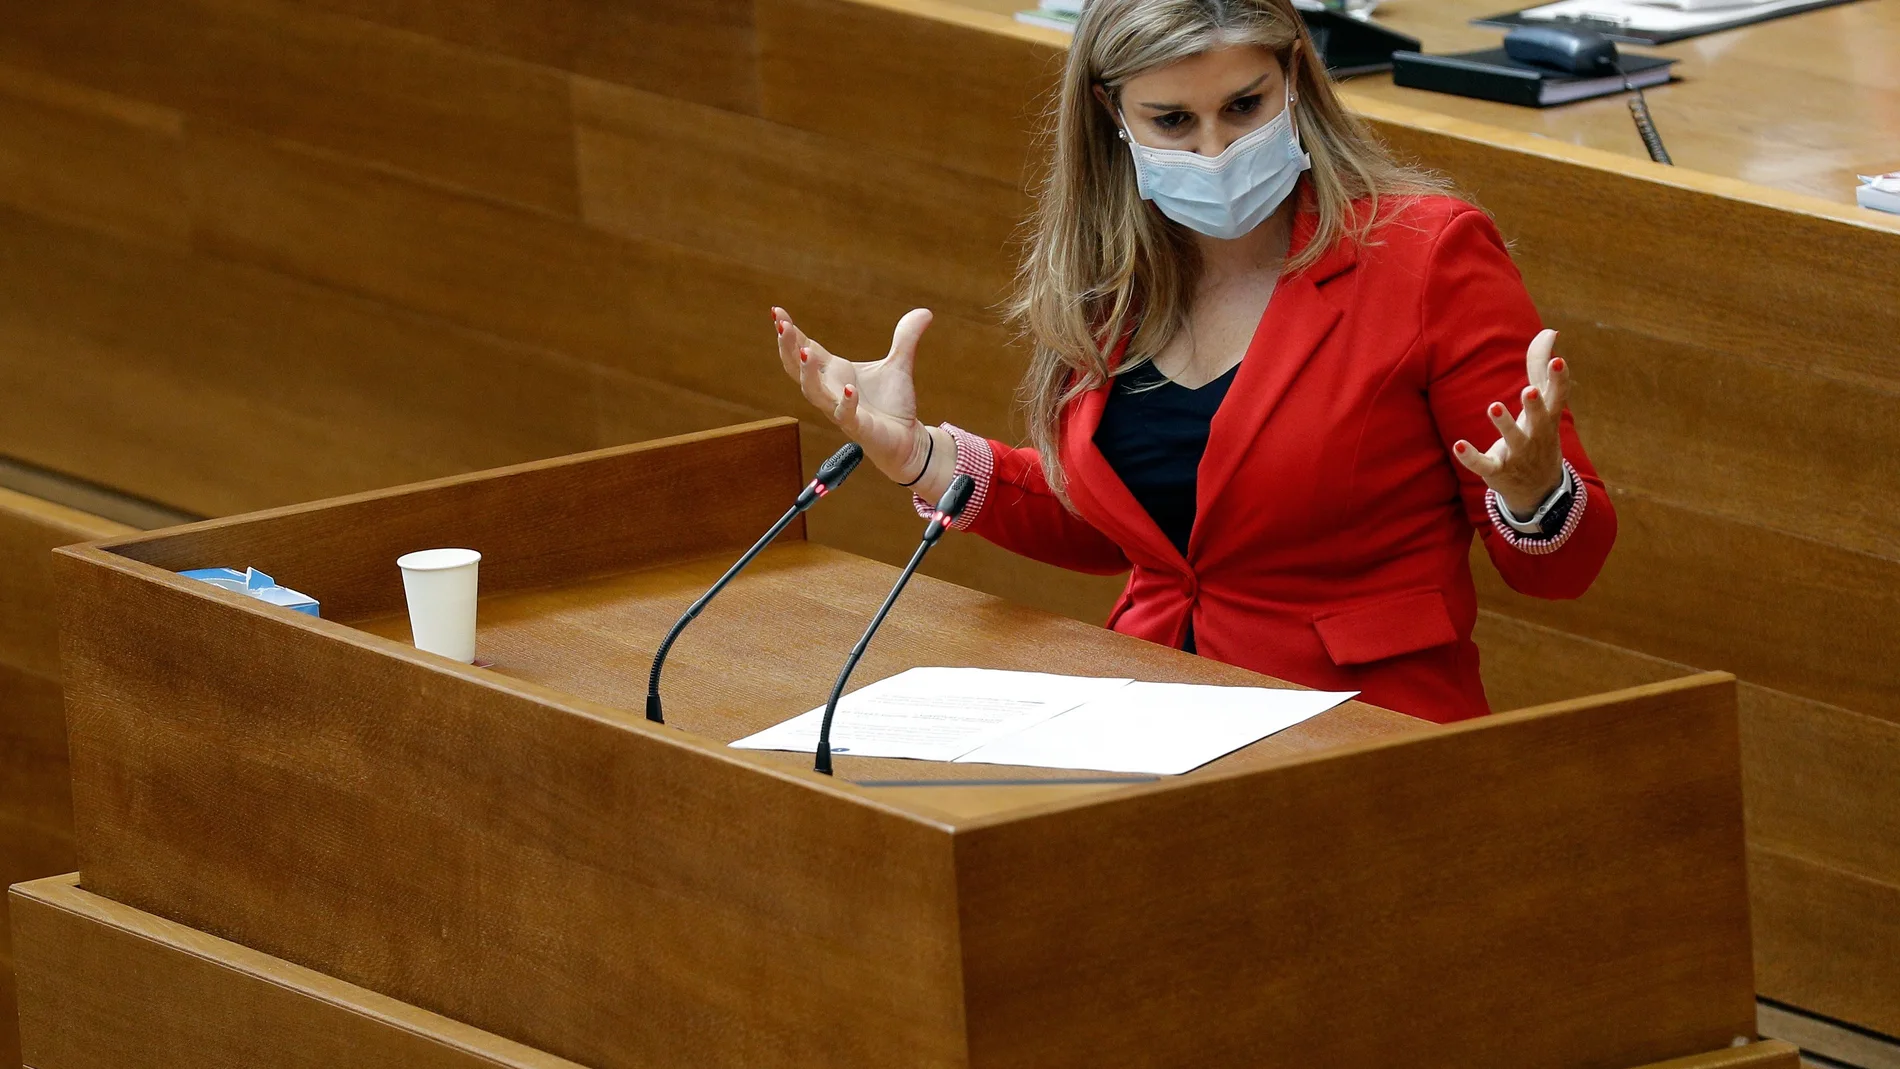 La portavoz del grupo popular, Eva Ortiz,interviene durante la sesión de control al Gobierno valenciano en el hemiciclo de Les Corts